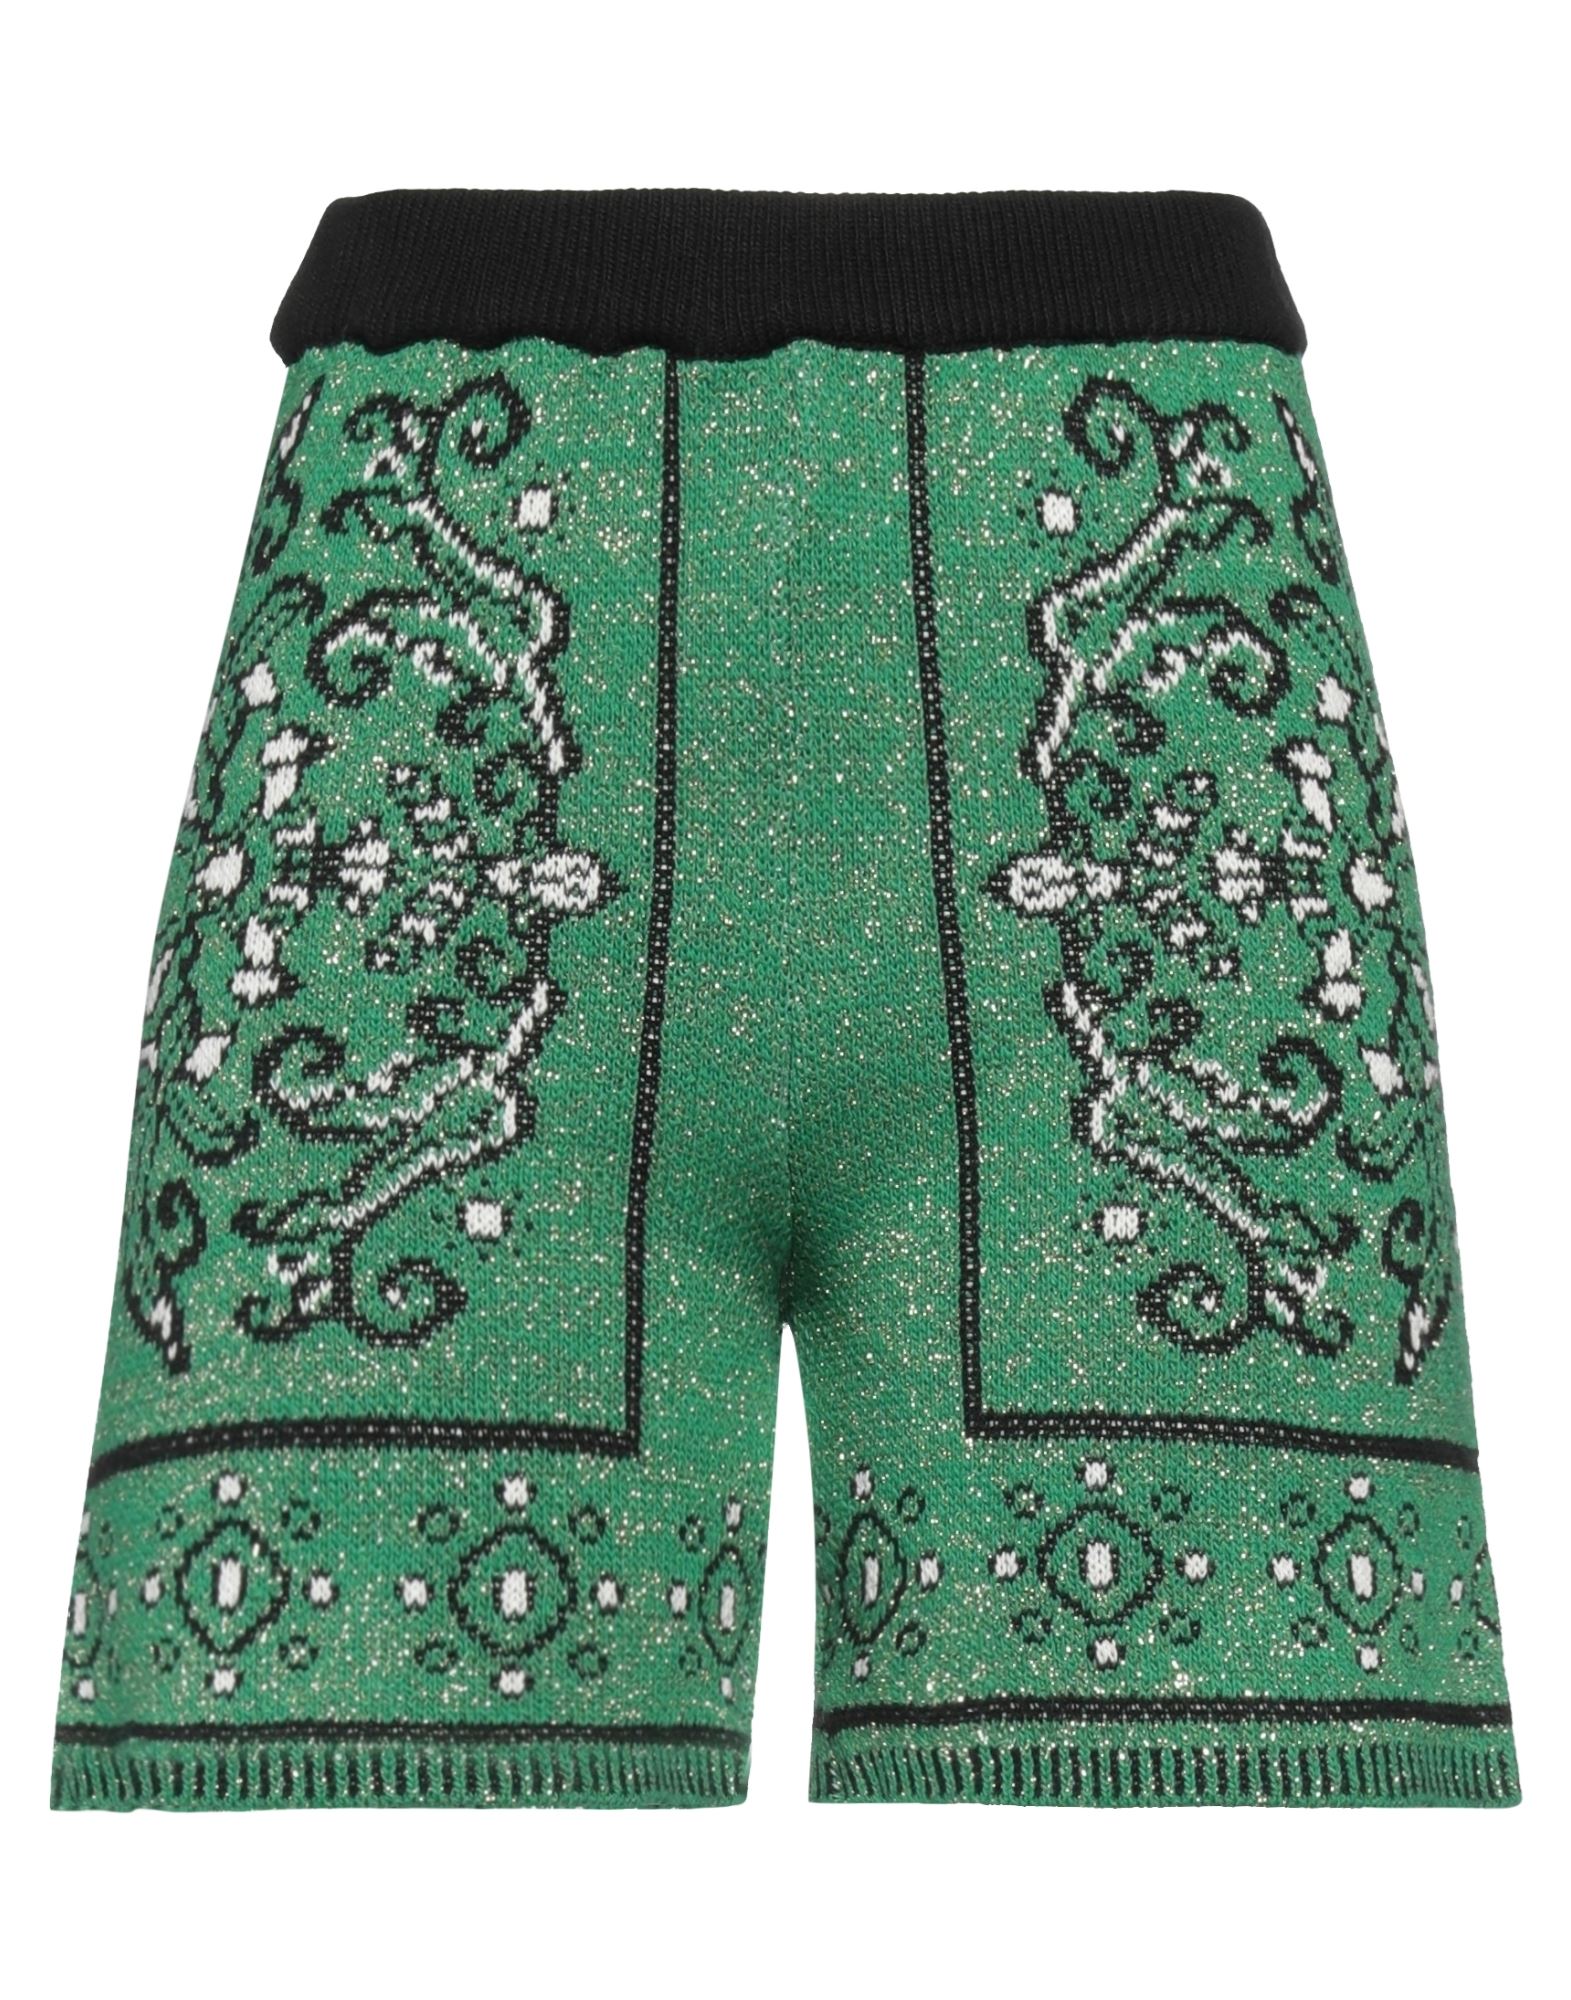 Space Simona Corsellini Simona Corsellini Woman Shorts & Bermuda Shorts Green Size L Cotton, Acrylic